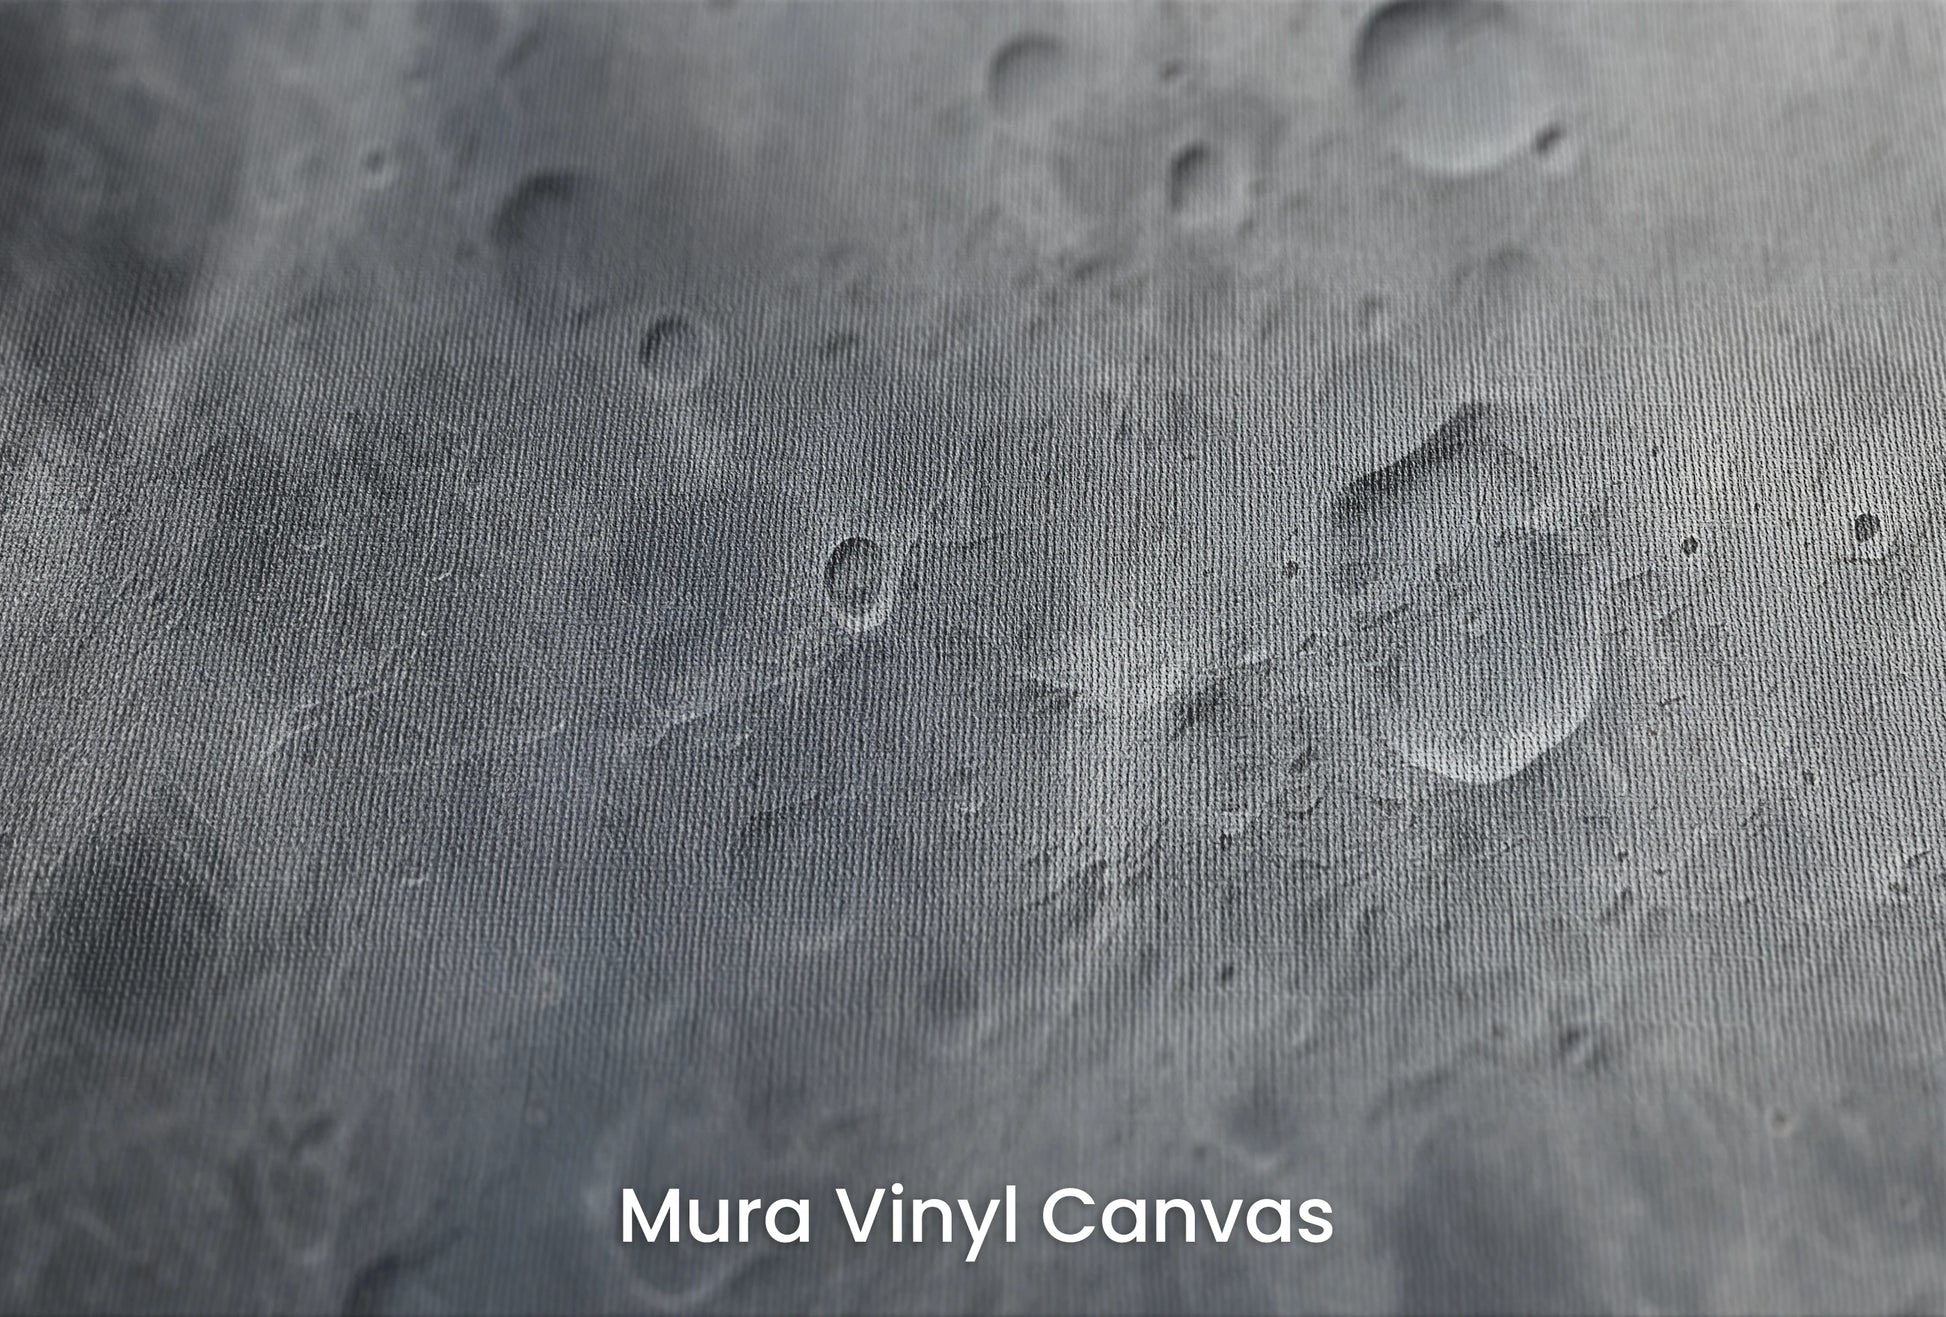 Zbliżenie na artystyczną fototapetę o nazwie Moon's Monochrome #2 na podłożu Mura Vinyl Canvas - faktura naturalnego płótna.